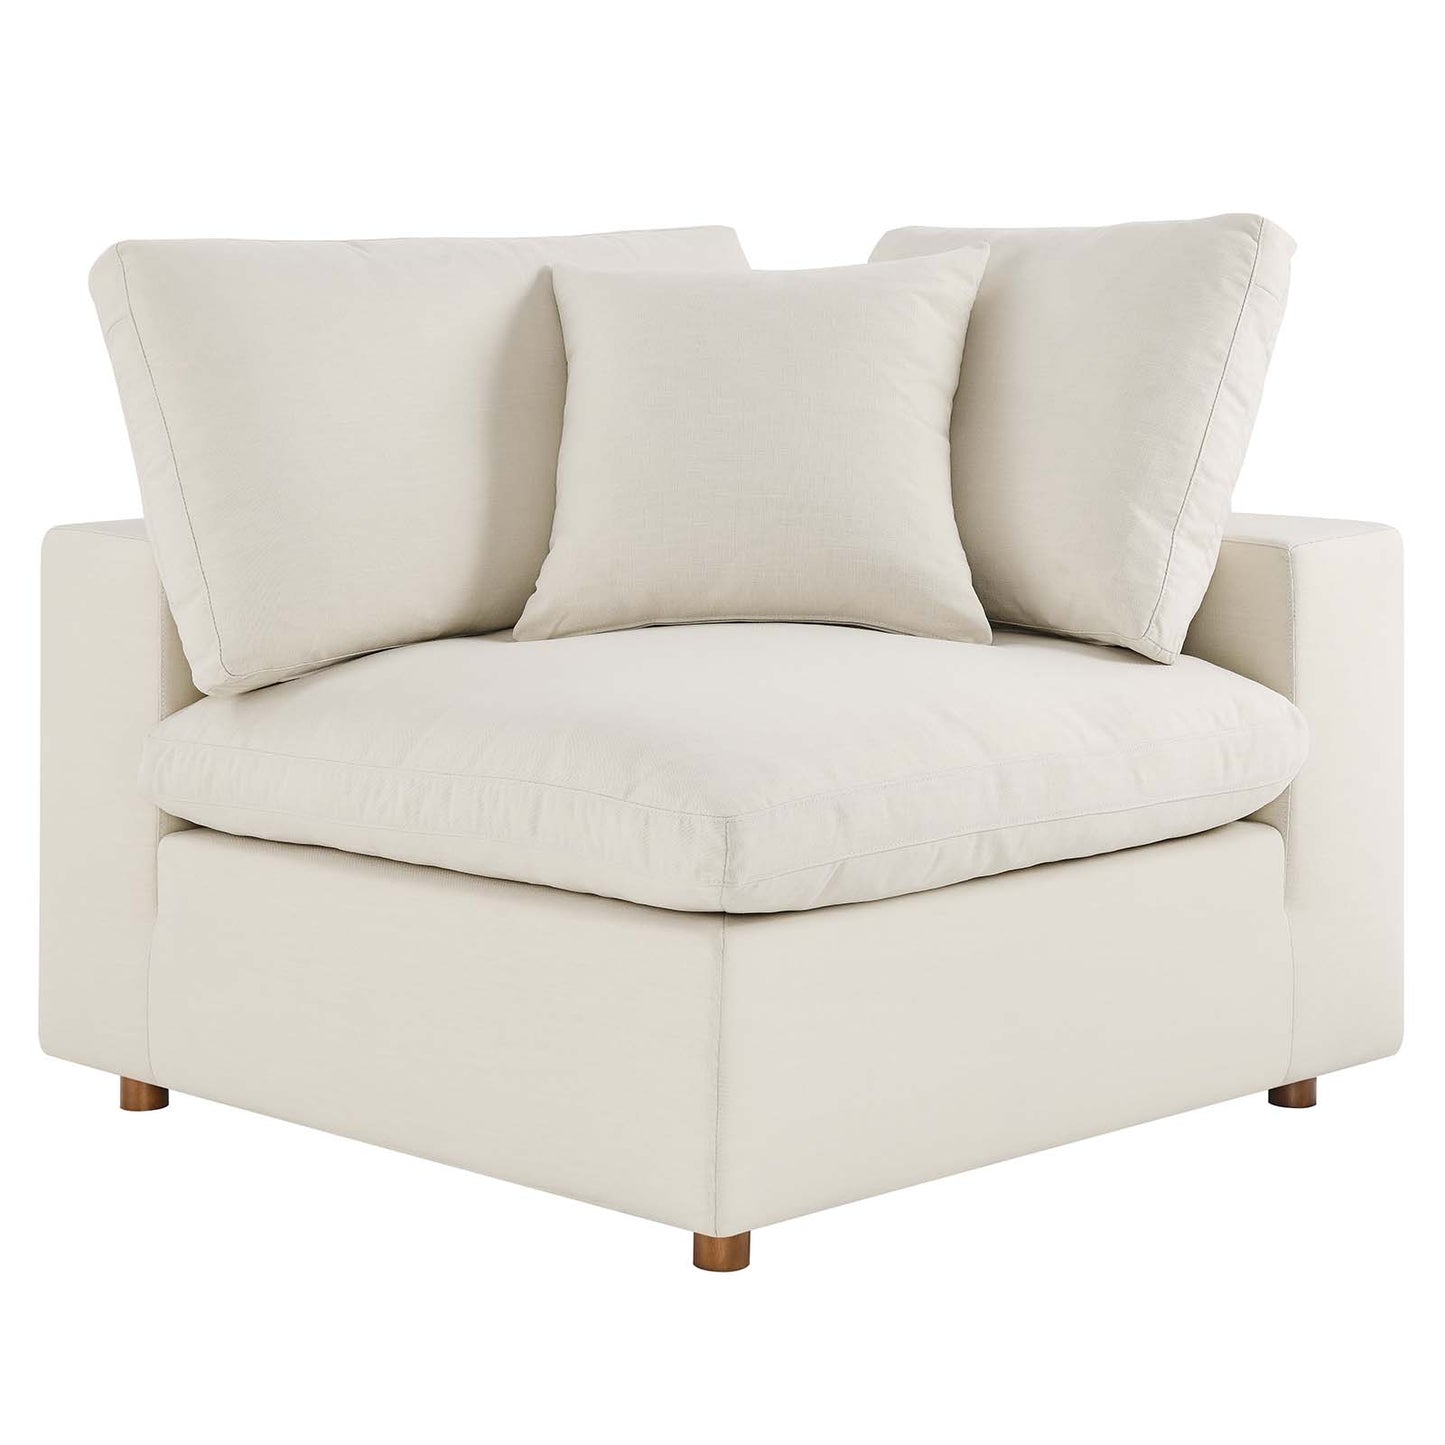 Commix Down Filled Overstuffed 5-Piece Armless Sectional Sofa Light Beige EEI-3360-LBG